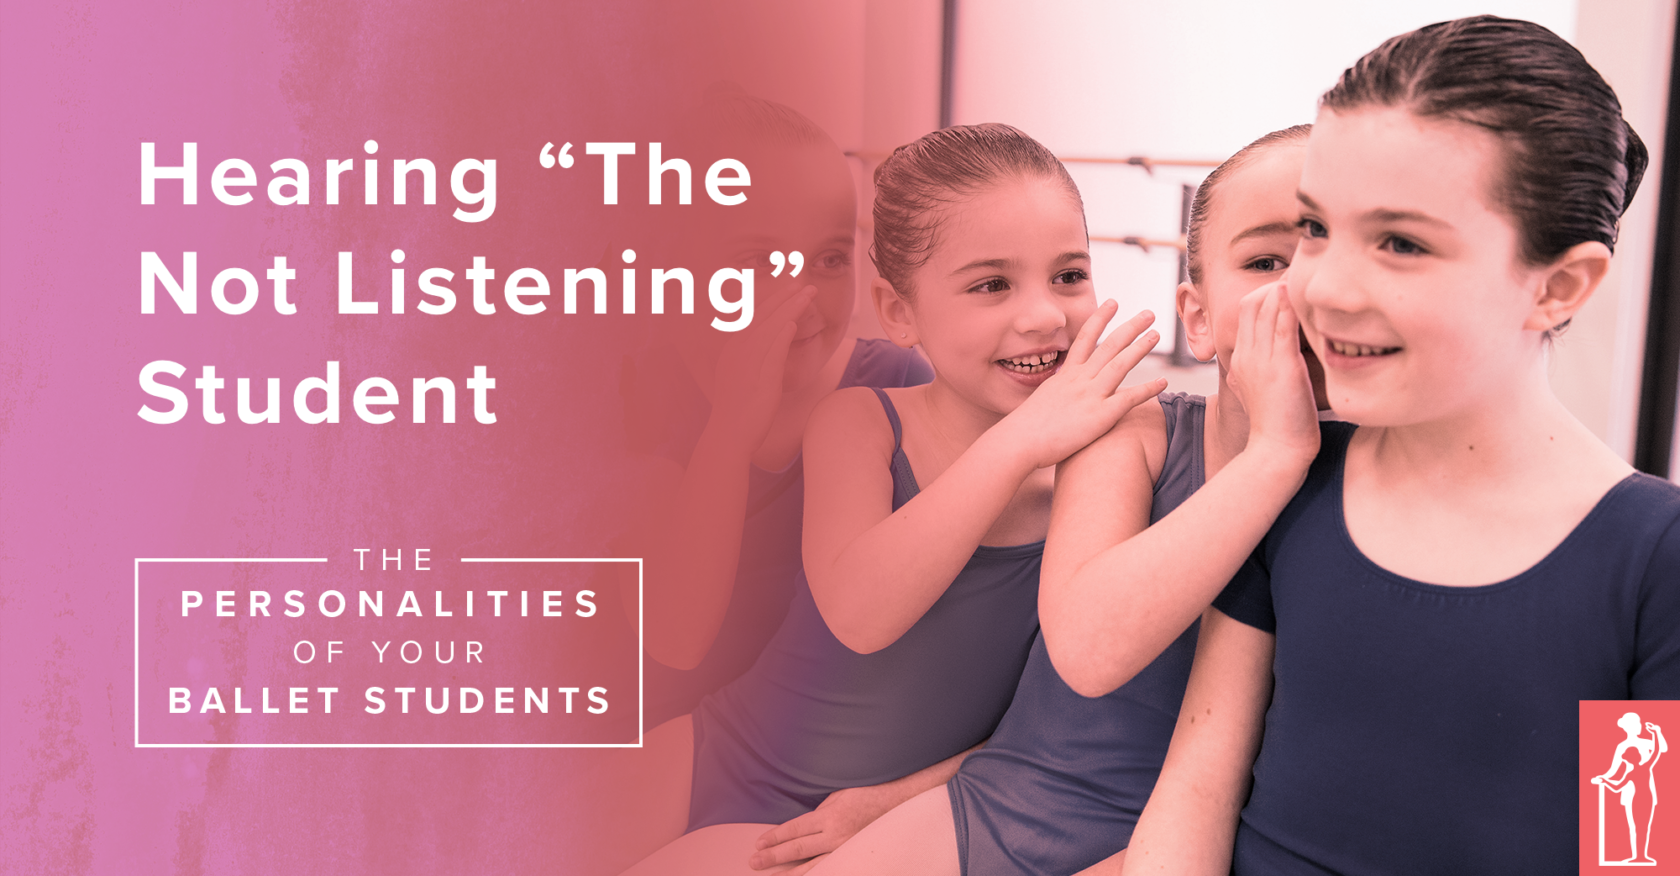 Ballet Student Personalities: "Not Listening"